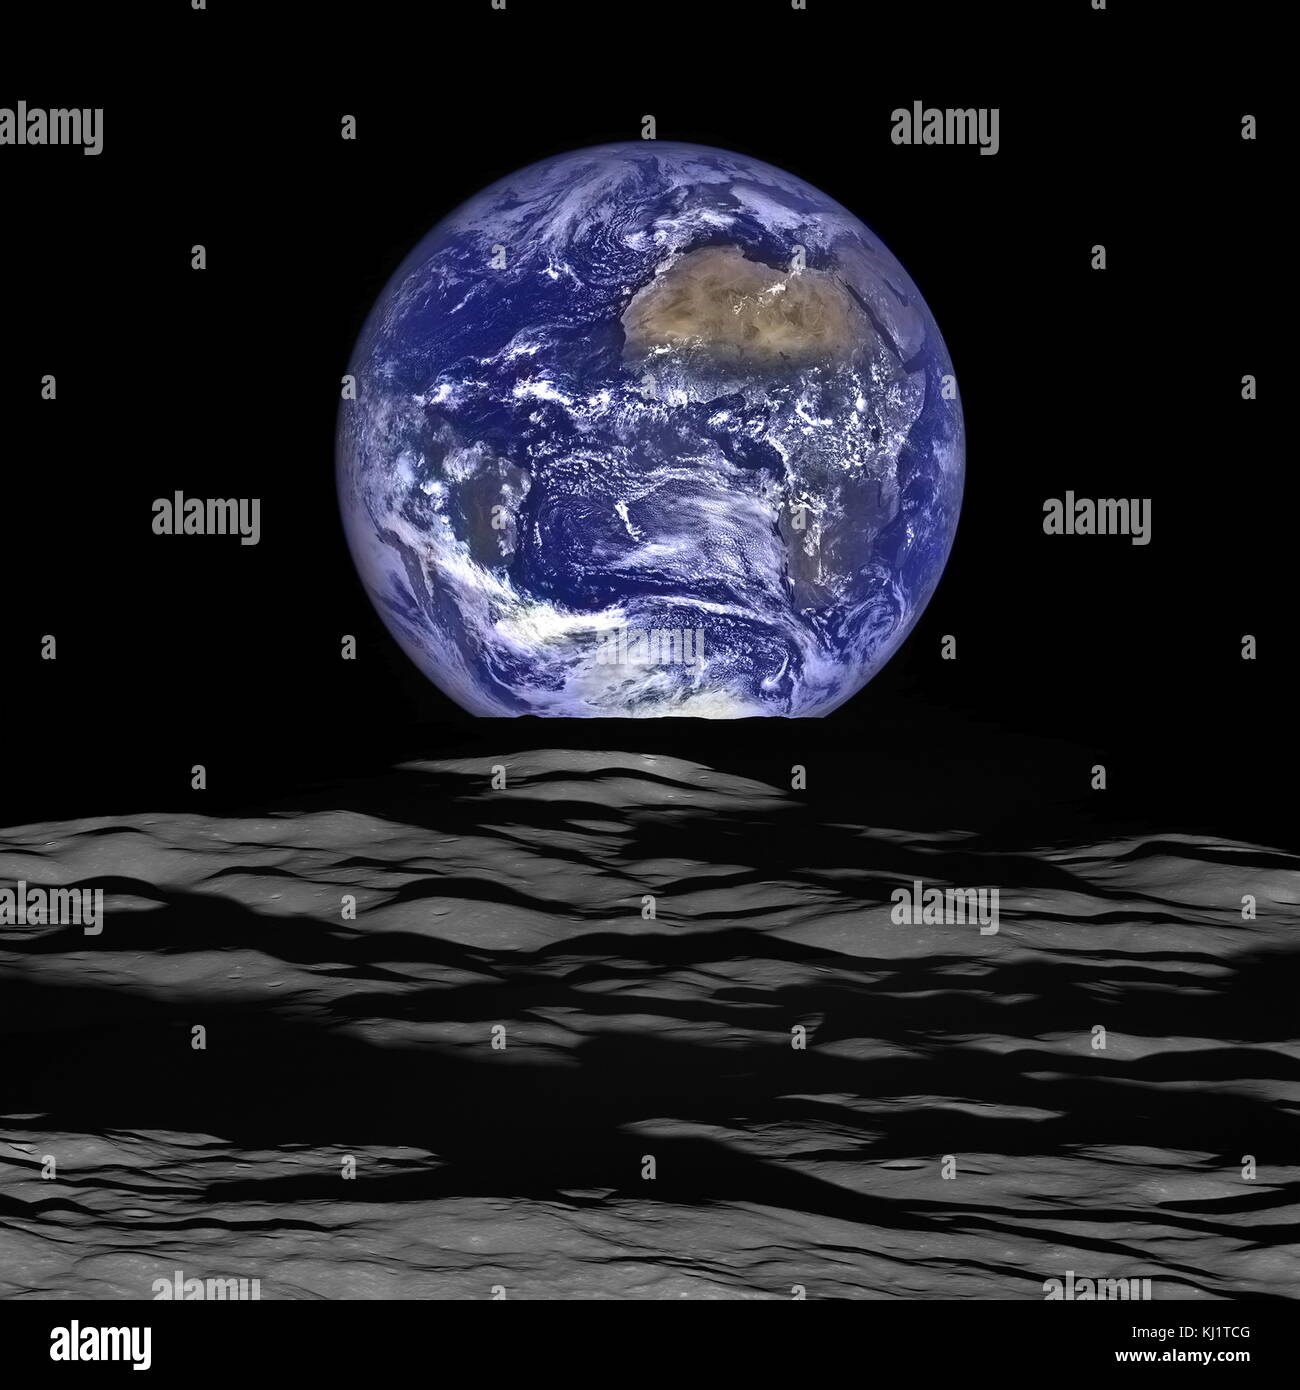 La NASA Lunar Reconnaissance Orbiter (LRO) a récemment pris une vue unique de la terre du point de vue du vaisseau spatial en orbite autour de la lune. Dans cette image composite nous voir la Terre semblent se lever sur l'horizon lunaire du point de vue de l'engin spatial, avec le centre de la terre tout près de la côte du Libéria le coin supérieur droit est le désert du Sahara, et juste au-delà est l'Arabie Saoudite. Les côtes atlantique et pacifique de l'Amérique du Sud sont visibles à gauche Banque D'Images